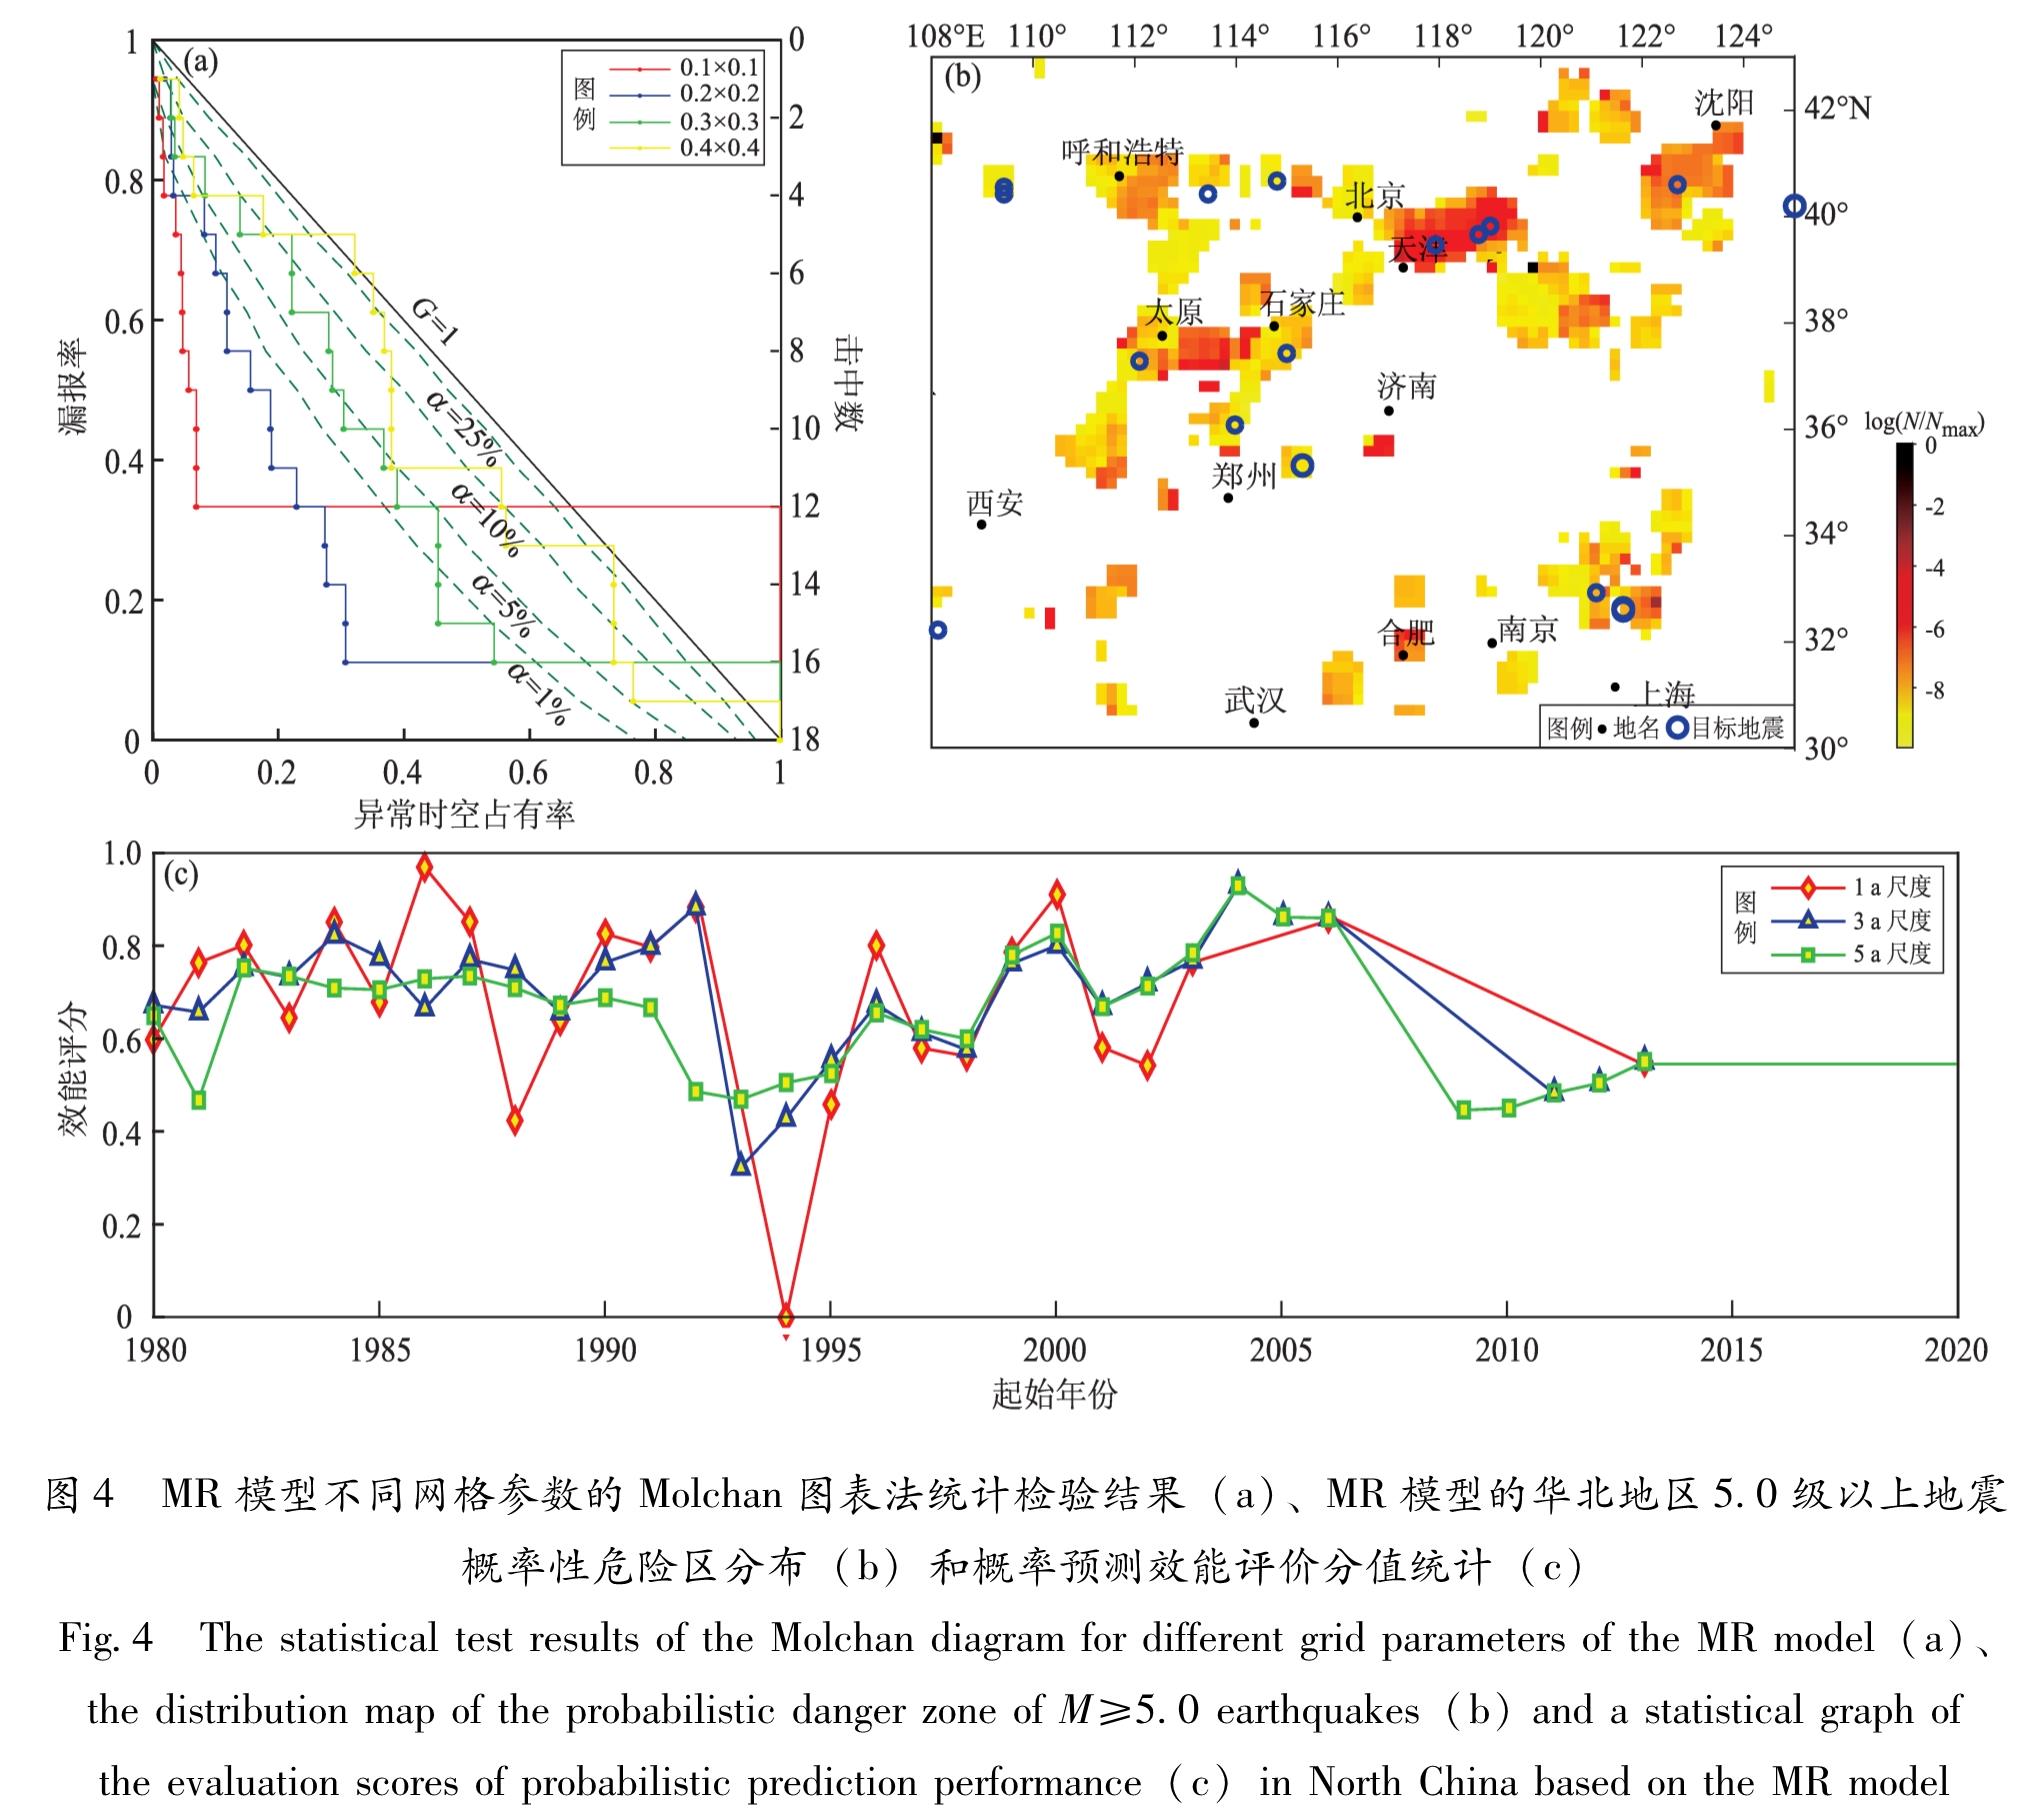 图4 MR模型不同网格参数的Molchan图表法统计检验结果(a)、MR模型的华北地区5.0级以上地震概率性危险区分布(b)和概率预测效能评价分值统计(c)<br/>Fig.4 The statistical test results of the Molchan diagram for different grid parameters of the MR model(a)、the distribution map of the probabilistic danger zone of M≥5.0 earthquakes(b)and a statistical graph of the evaluation scores of probabilistic prediction performance(c)in North China based on the MR model